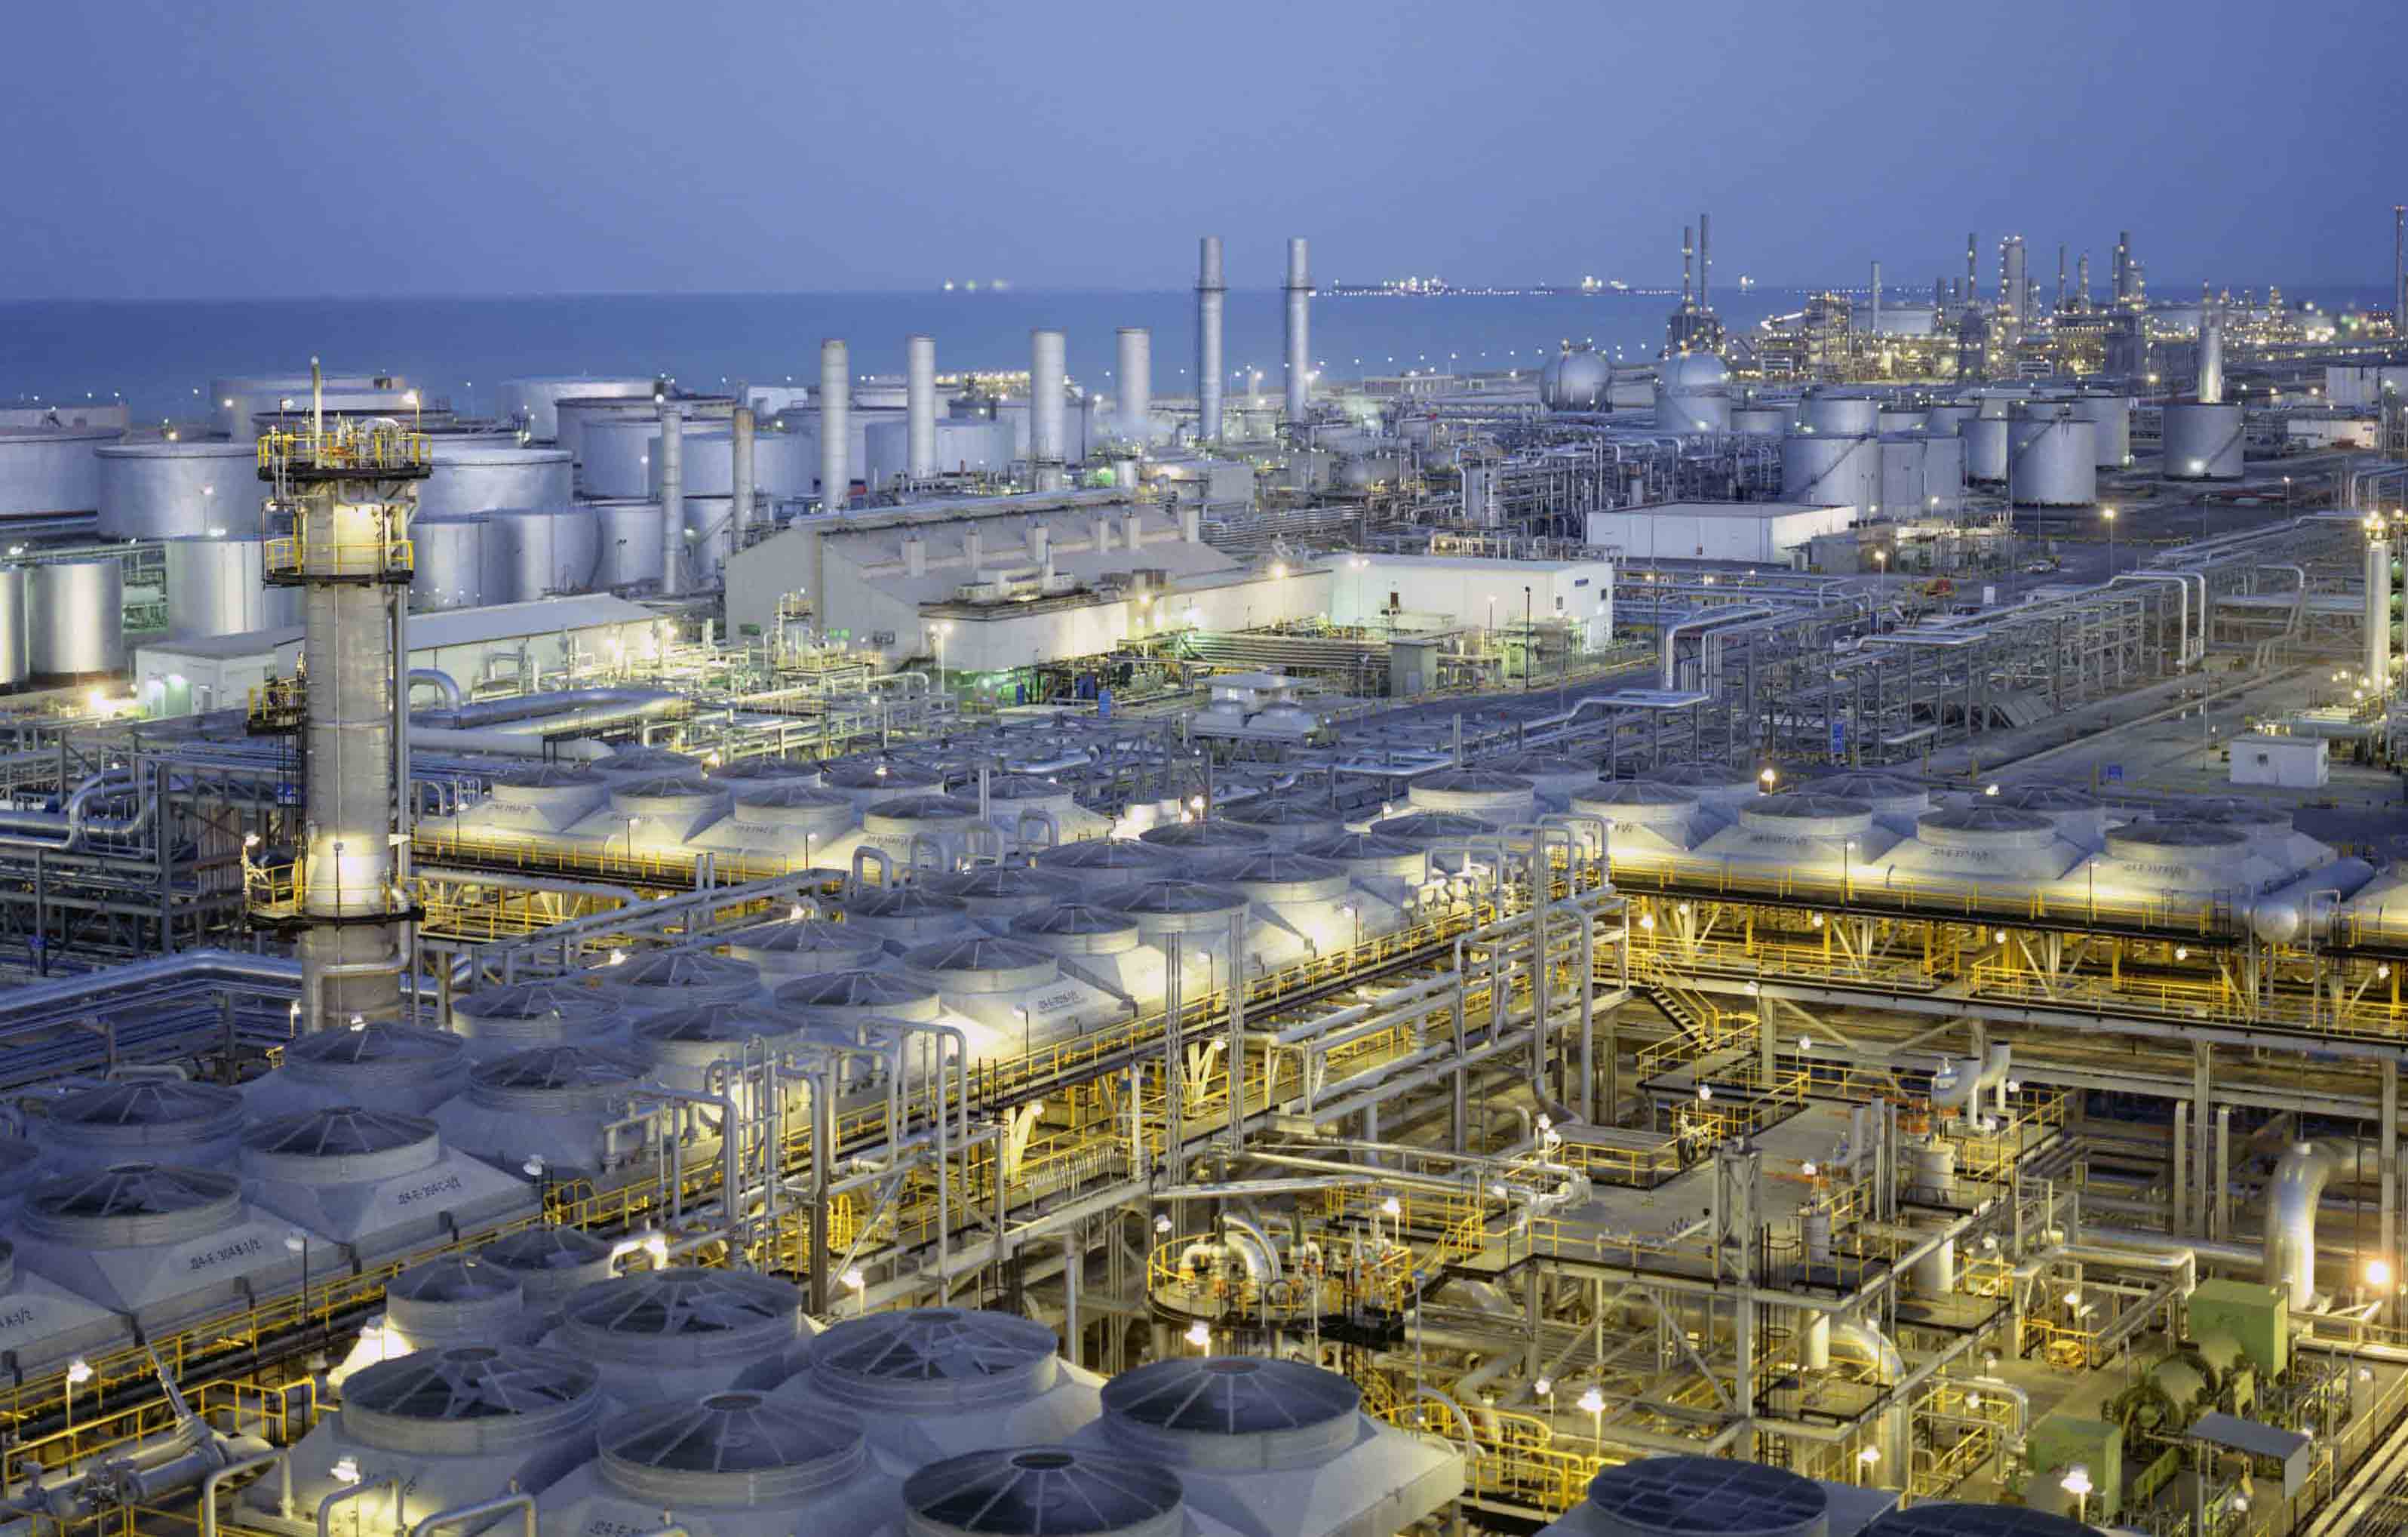 Suudi petrol devi anonim şirkete dönüştürülüyor